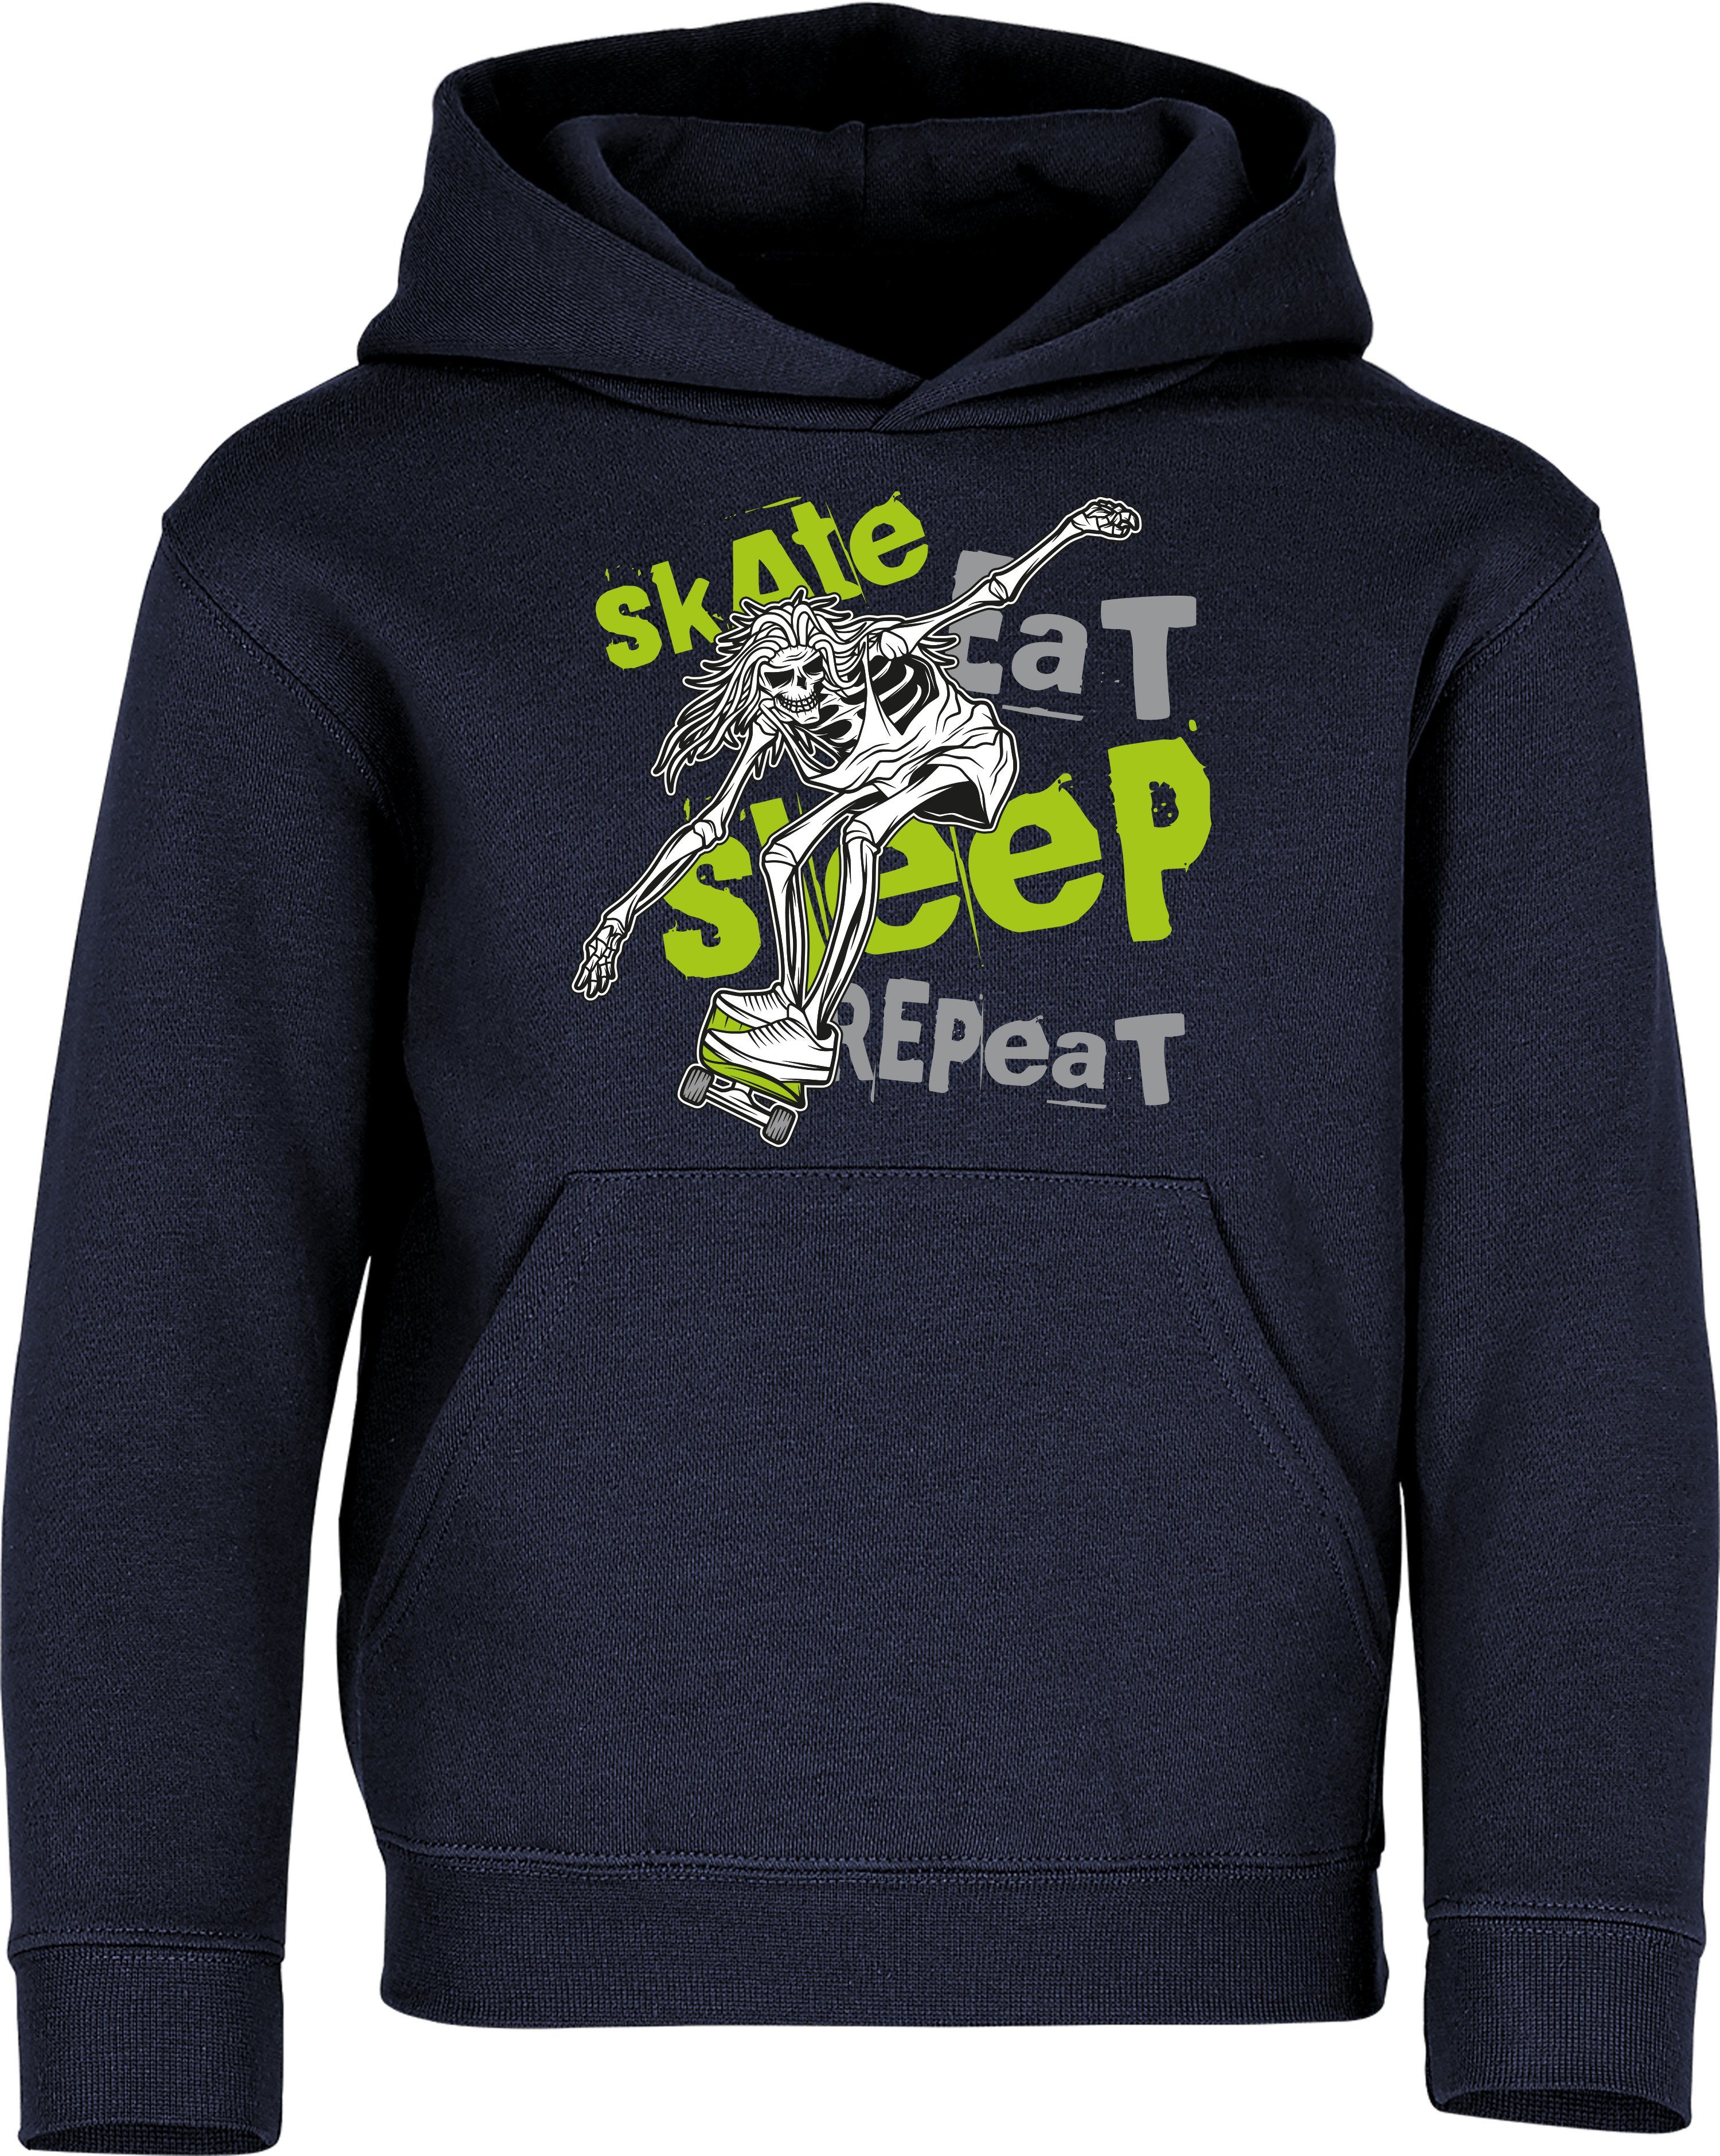 Baddery Kapuzenpullover Kinder Hoodie : Skate Eat Sleep Repeat - Pulli Skateboard Skaten hochwertiger Siebdruck Navy